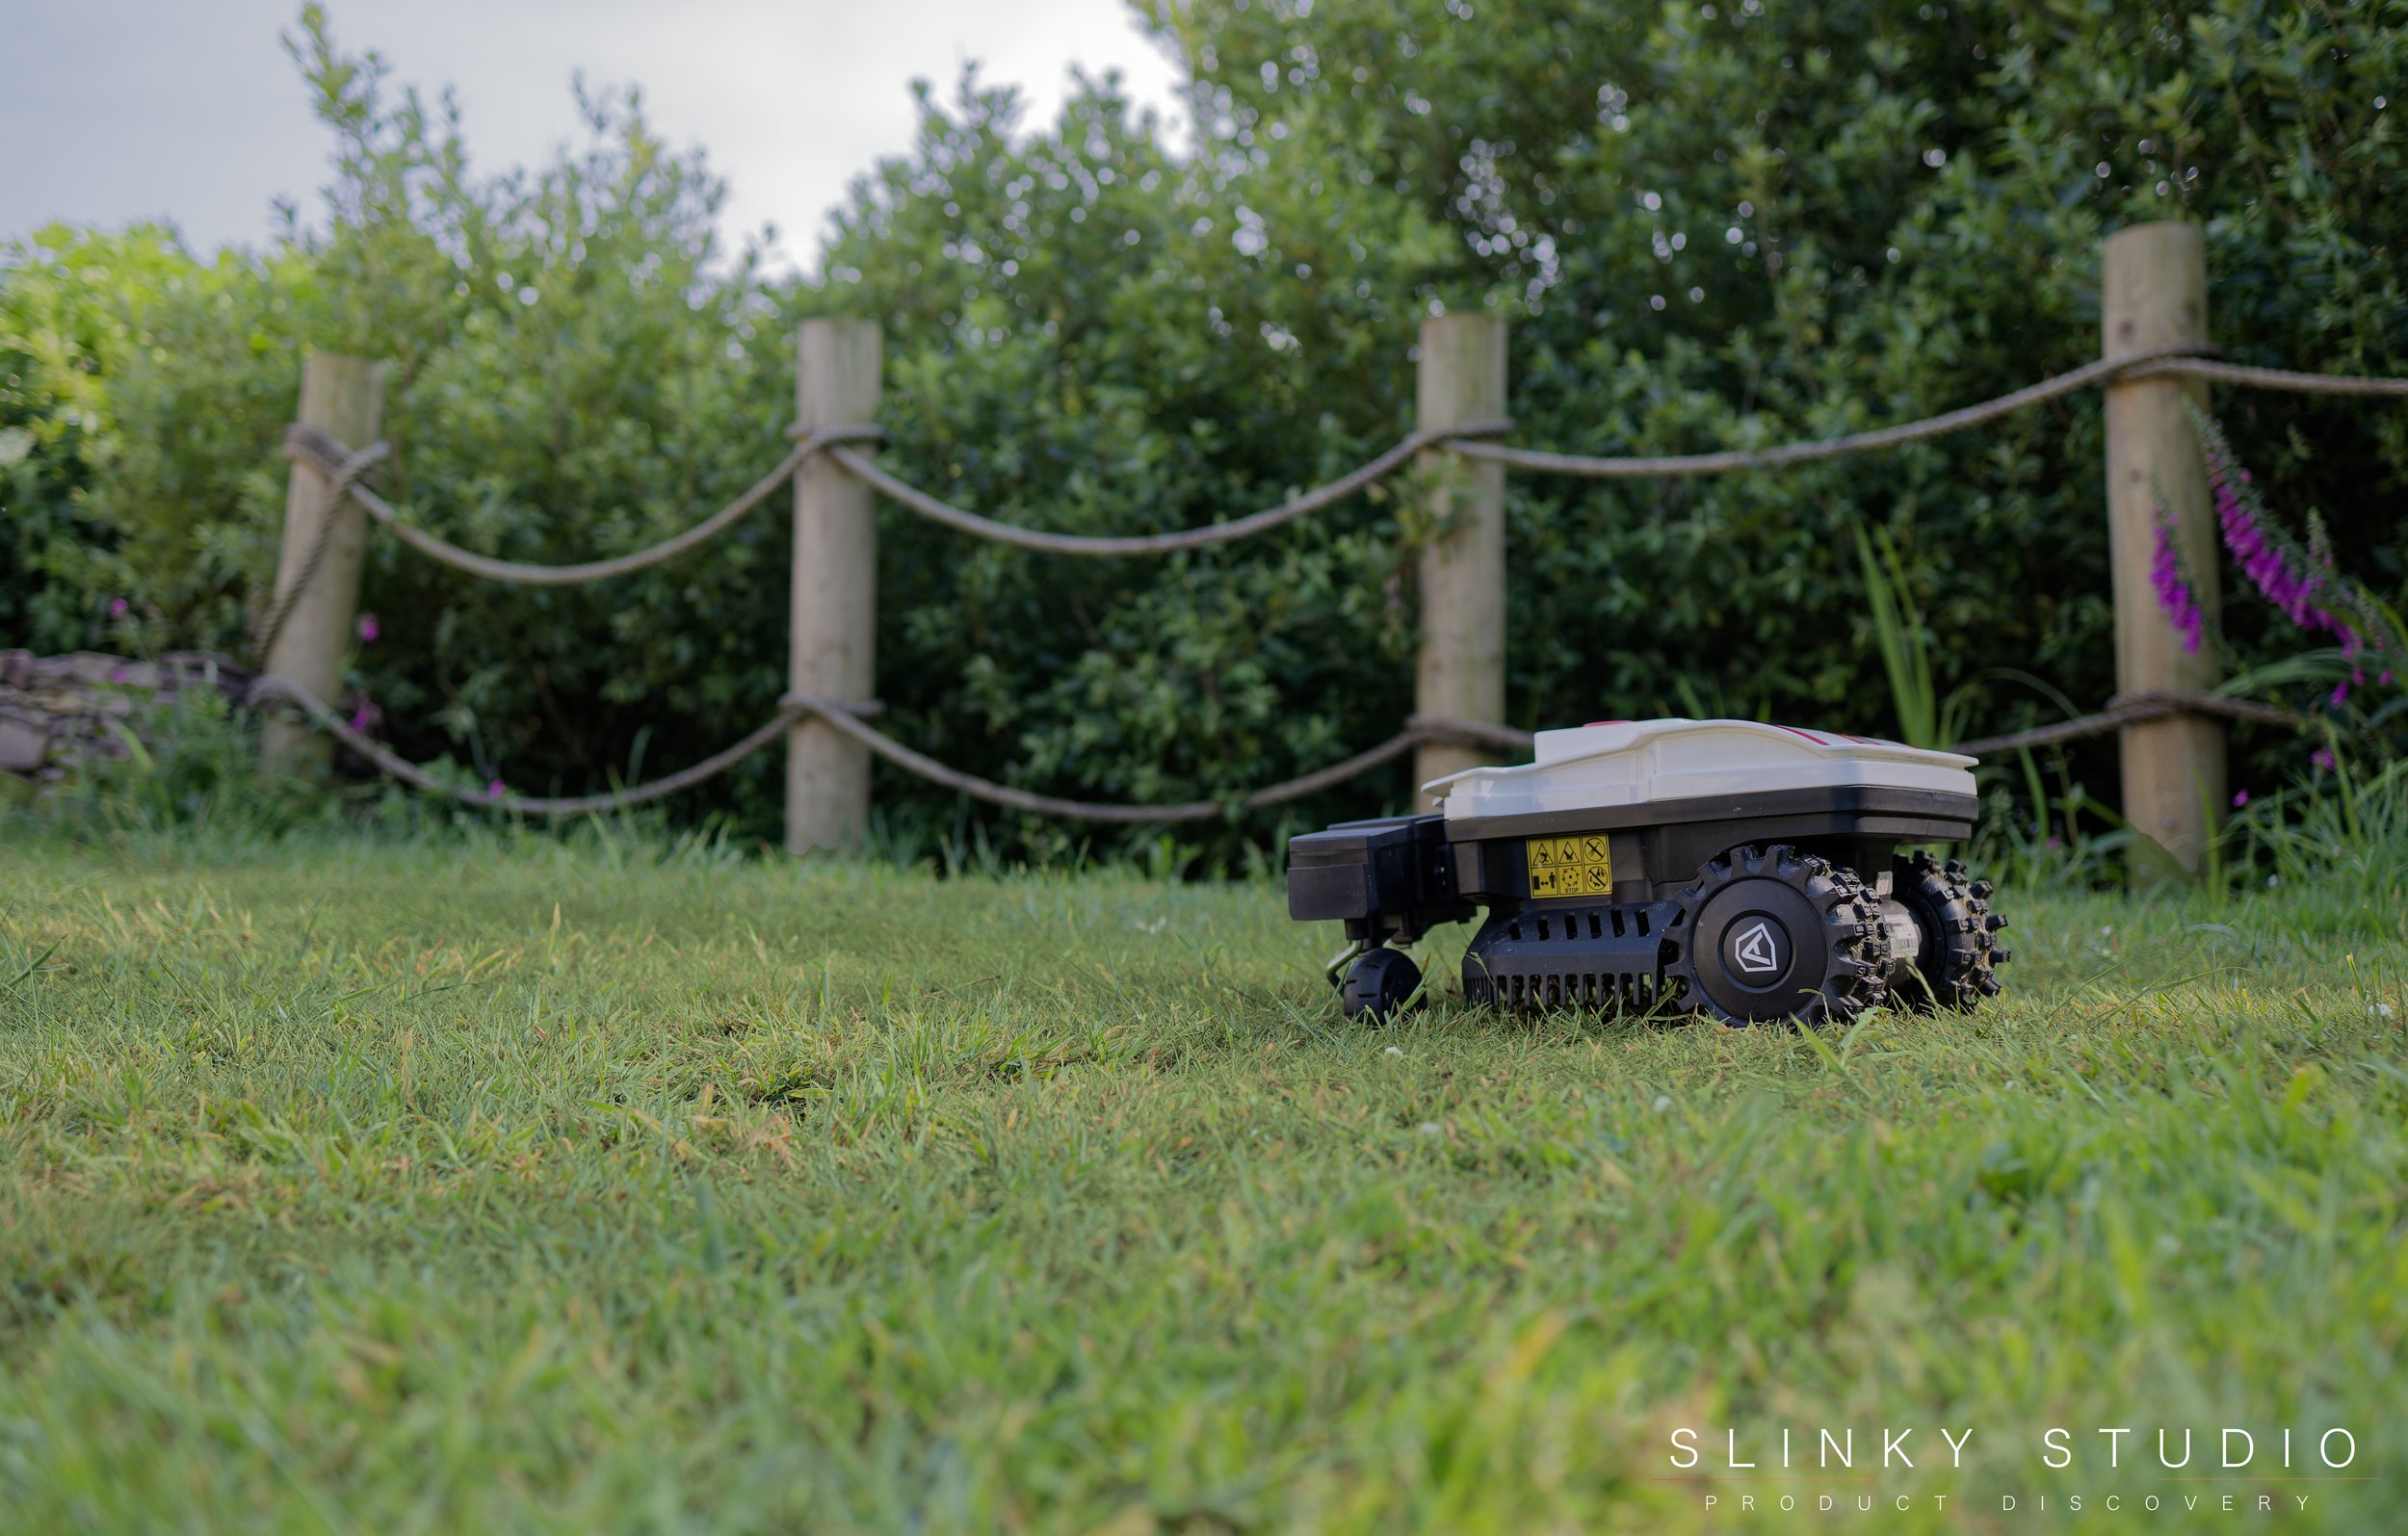 Ambrogio Twenty ZR Robot Lawnmower Cuttung Lawn with rope barrier .jpg